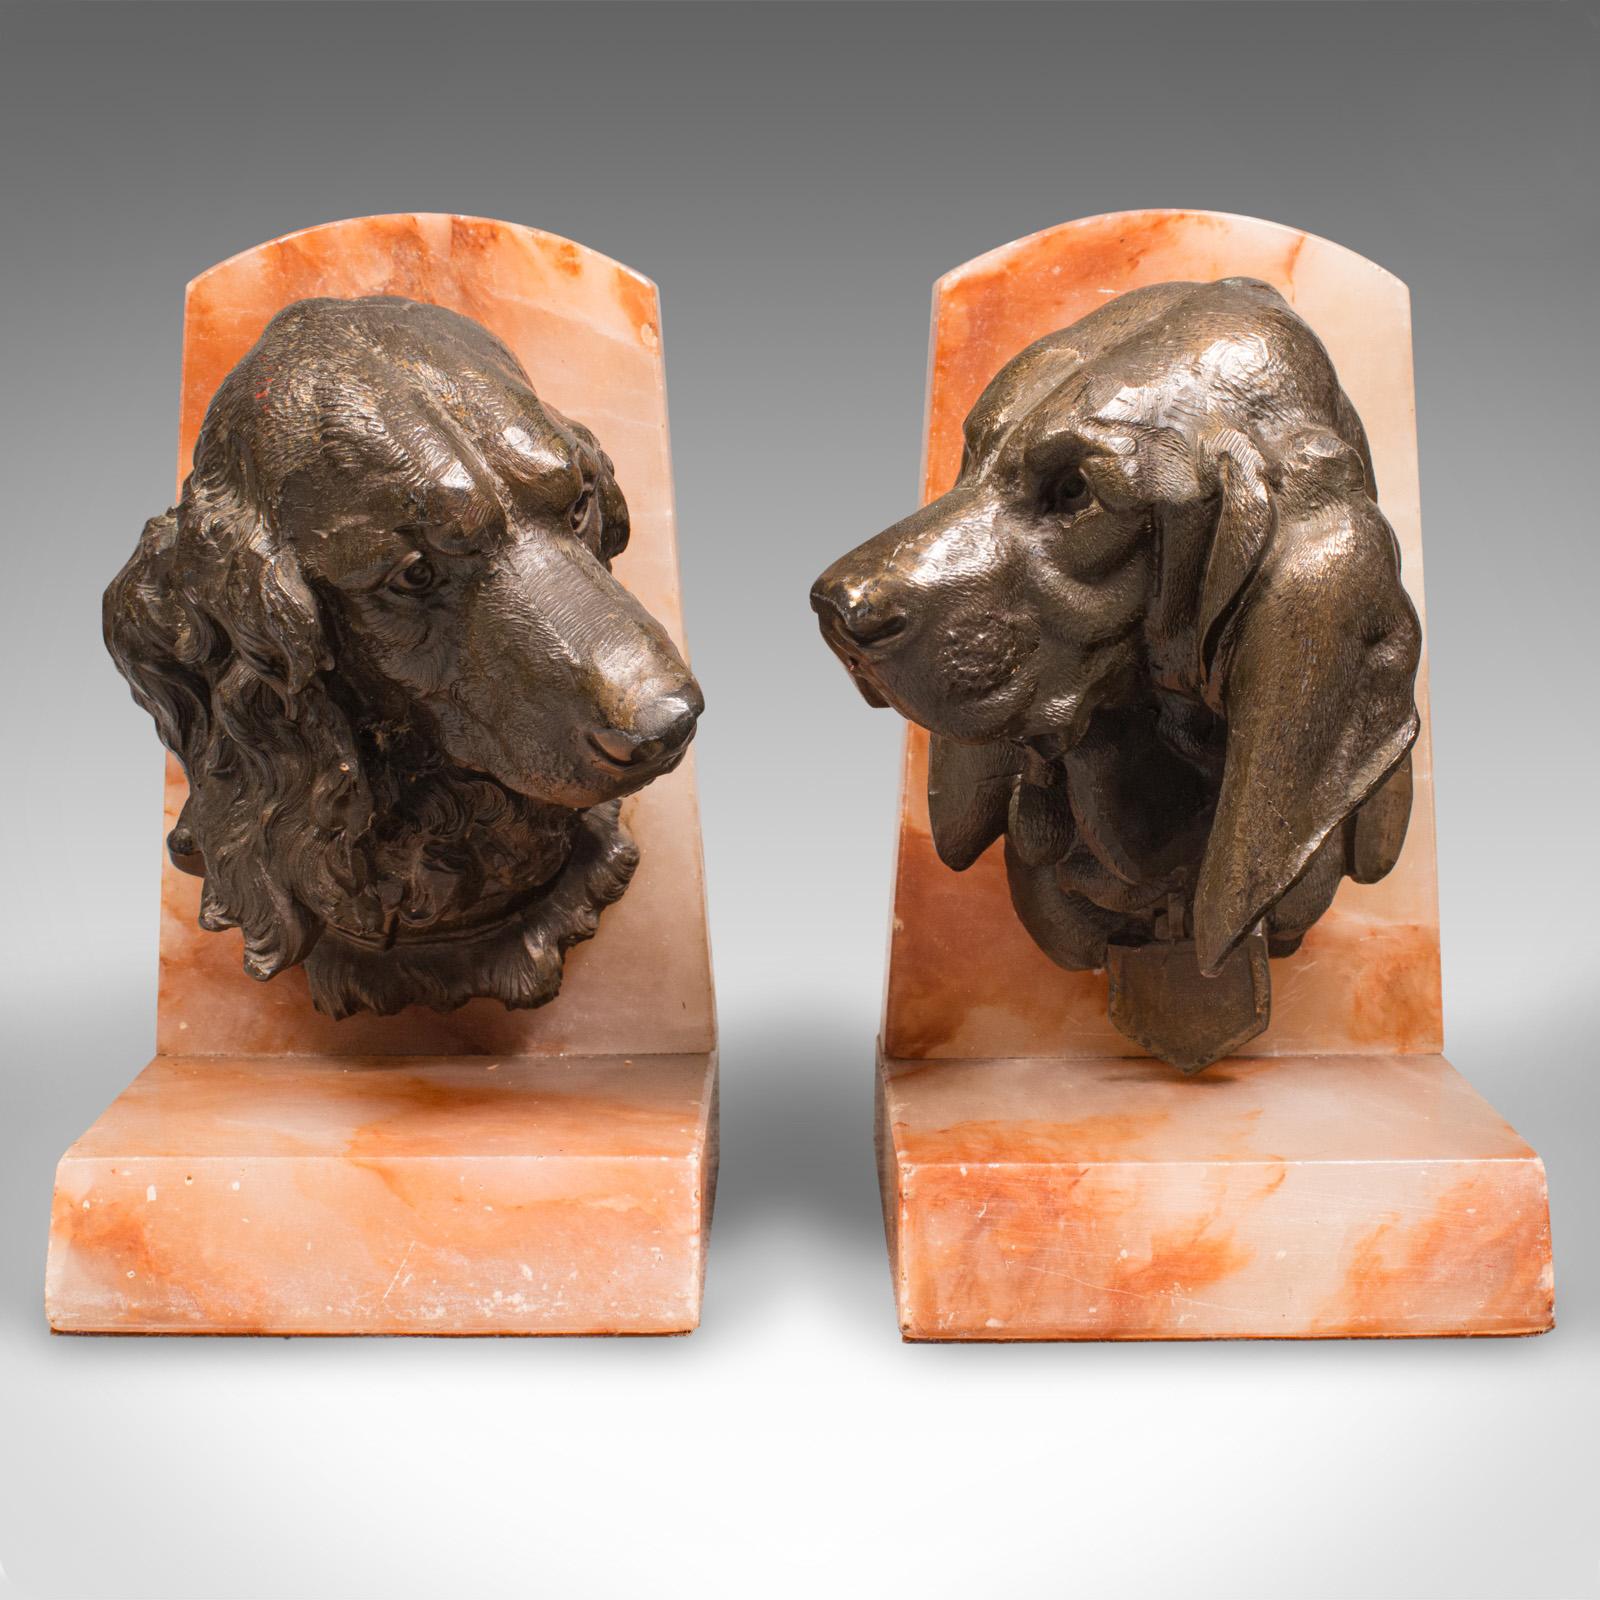 Il s'agit d'une paire de serre-livres anciens en forme d'animalier. Buste de chien en bronze cireux monté sur onyx rouge par Prosper Lecourtier (1851-1924), datant de la fin de la période victorienne, vers 1900.

Un attrait décoratif saisissant de